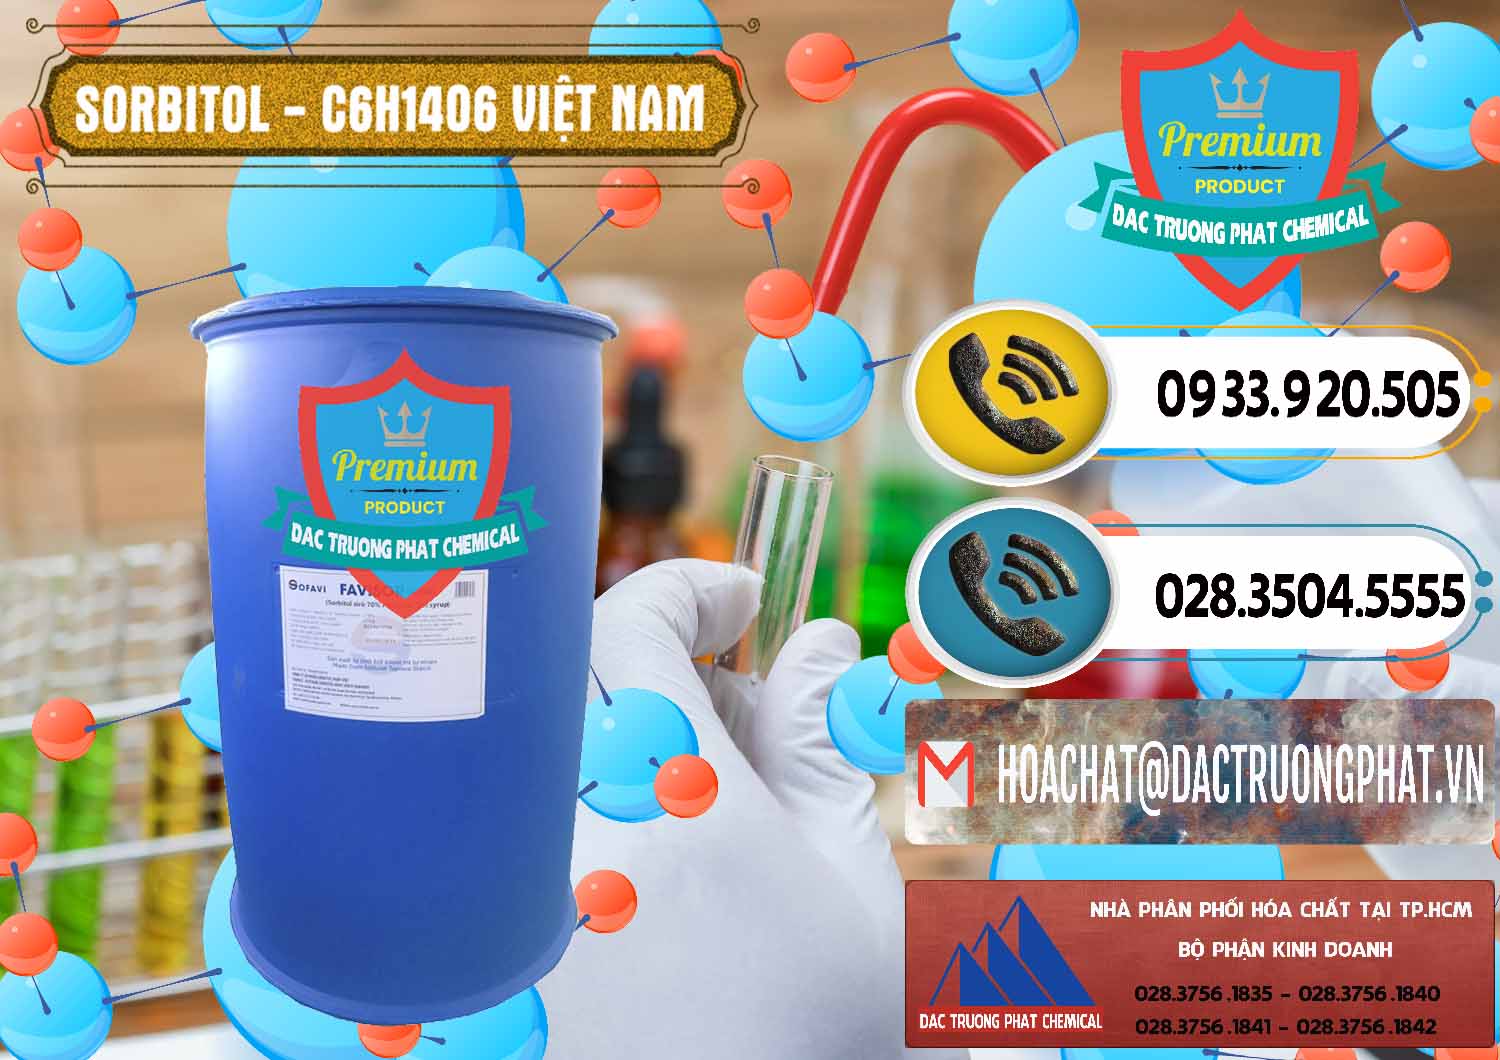 Chuyên kinh doanh _ bán Sorbitol - C6H14O6 Lỏng 70% Food Grade Việt Nam - 0438 - Đơn vị kinh doanh & bán hóa chất tại TP.HCM - hoachatdetnhuom.vn